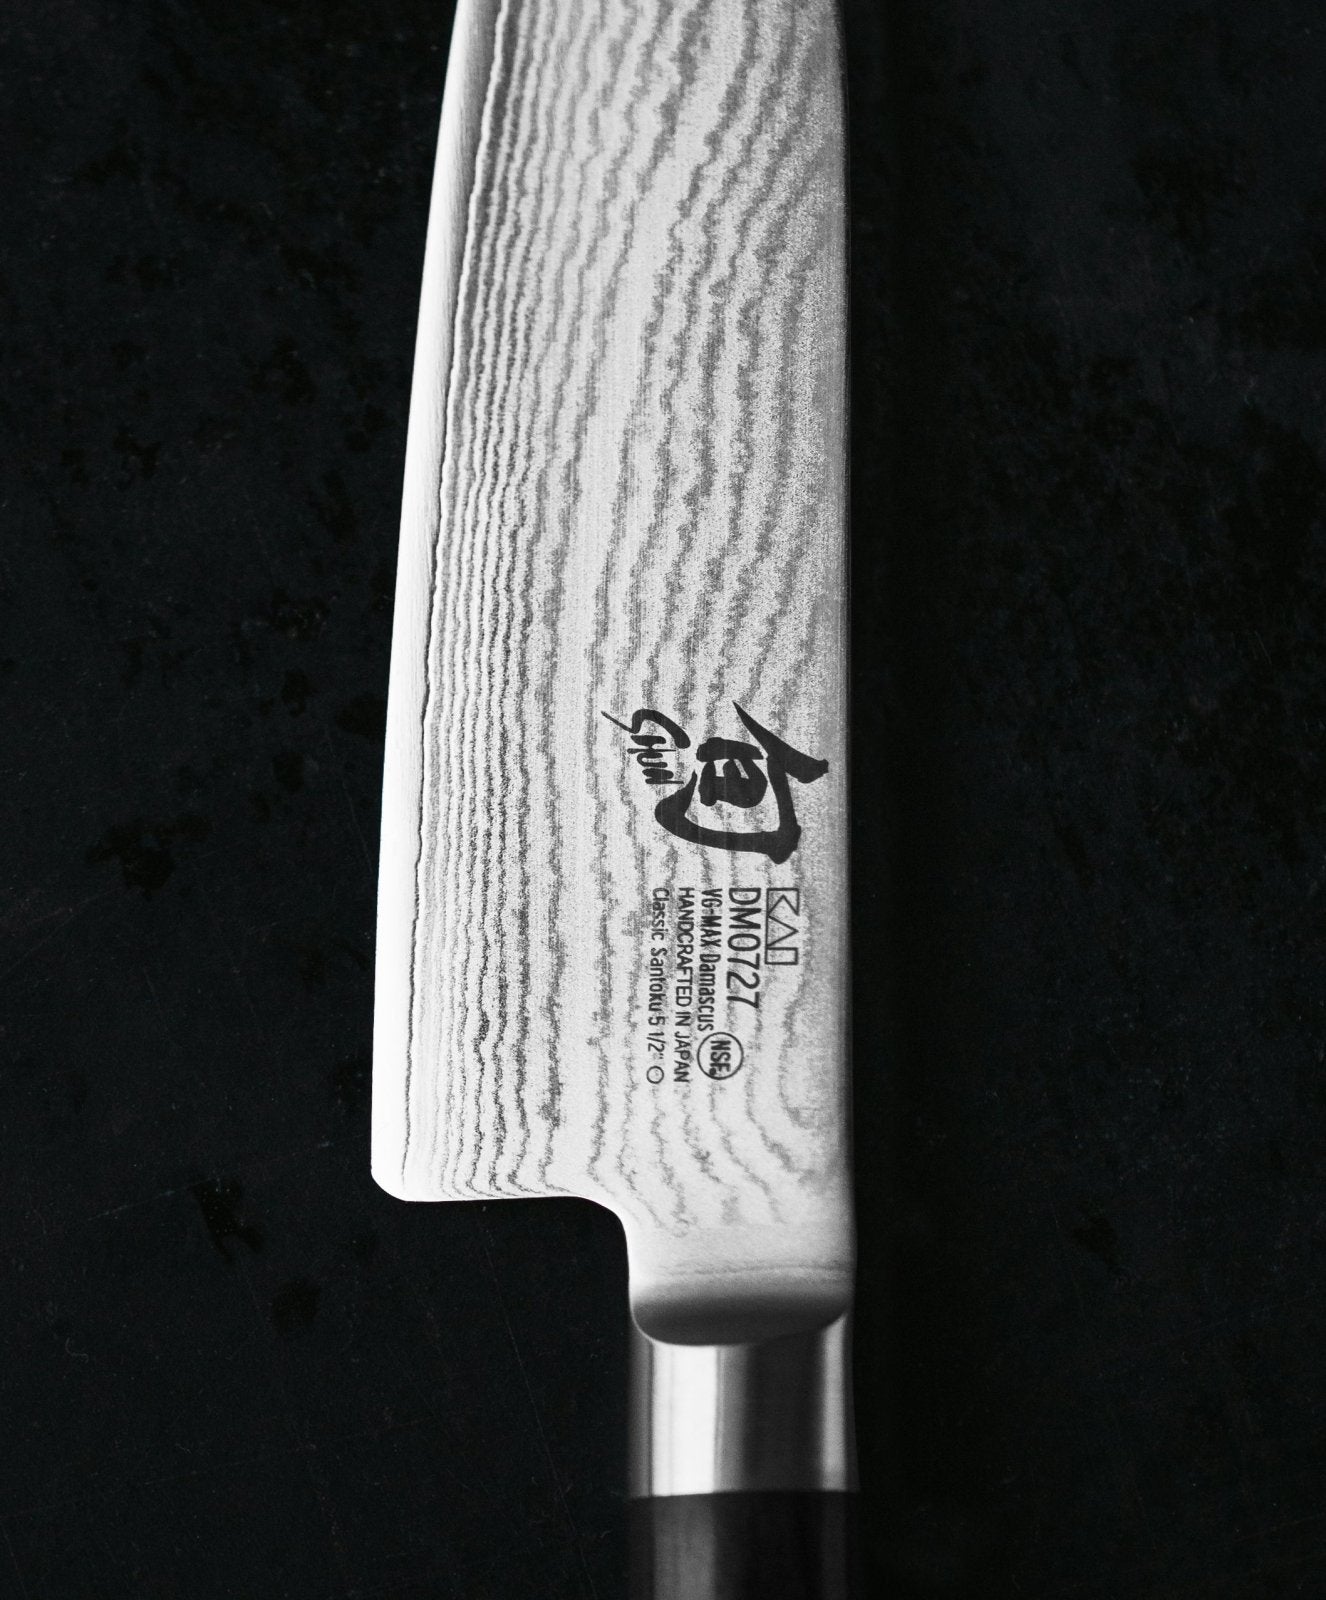 KAI Shun 18cm Flexible Fillet Knife - KAI-DM-0761 - The Cotswold Knife Company